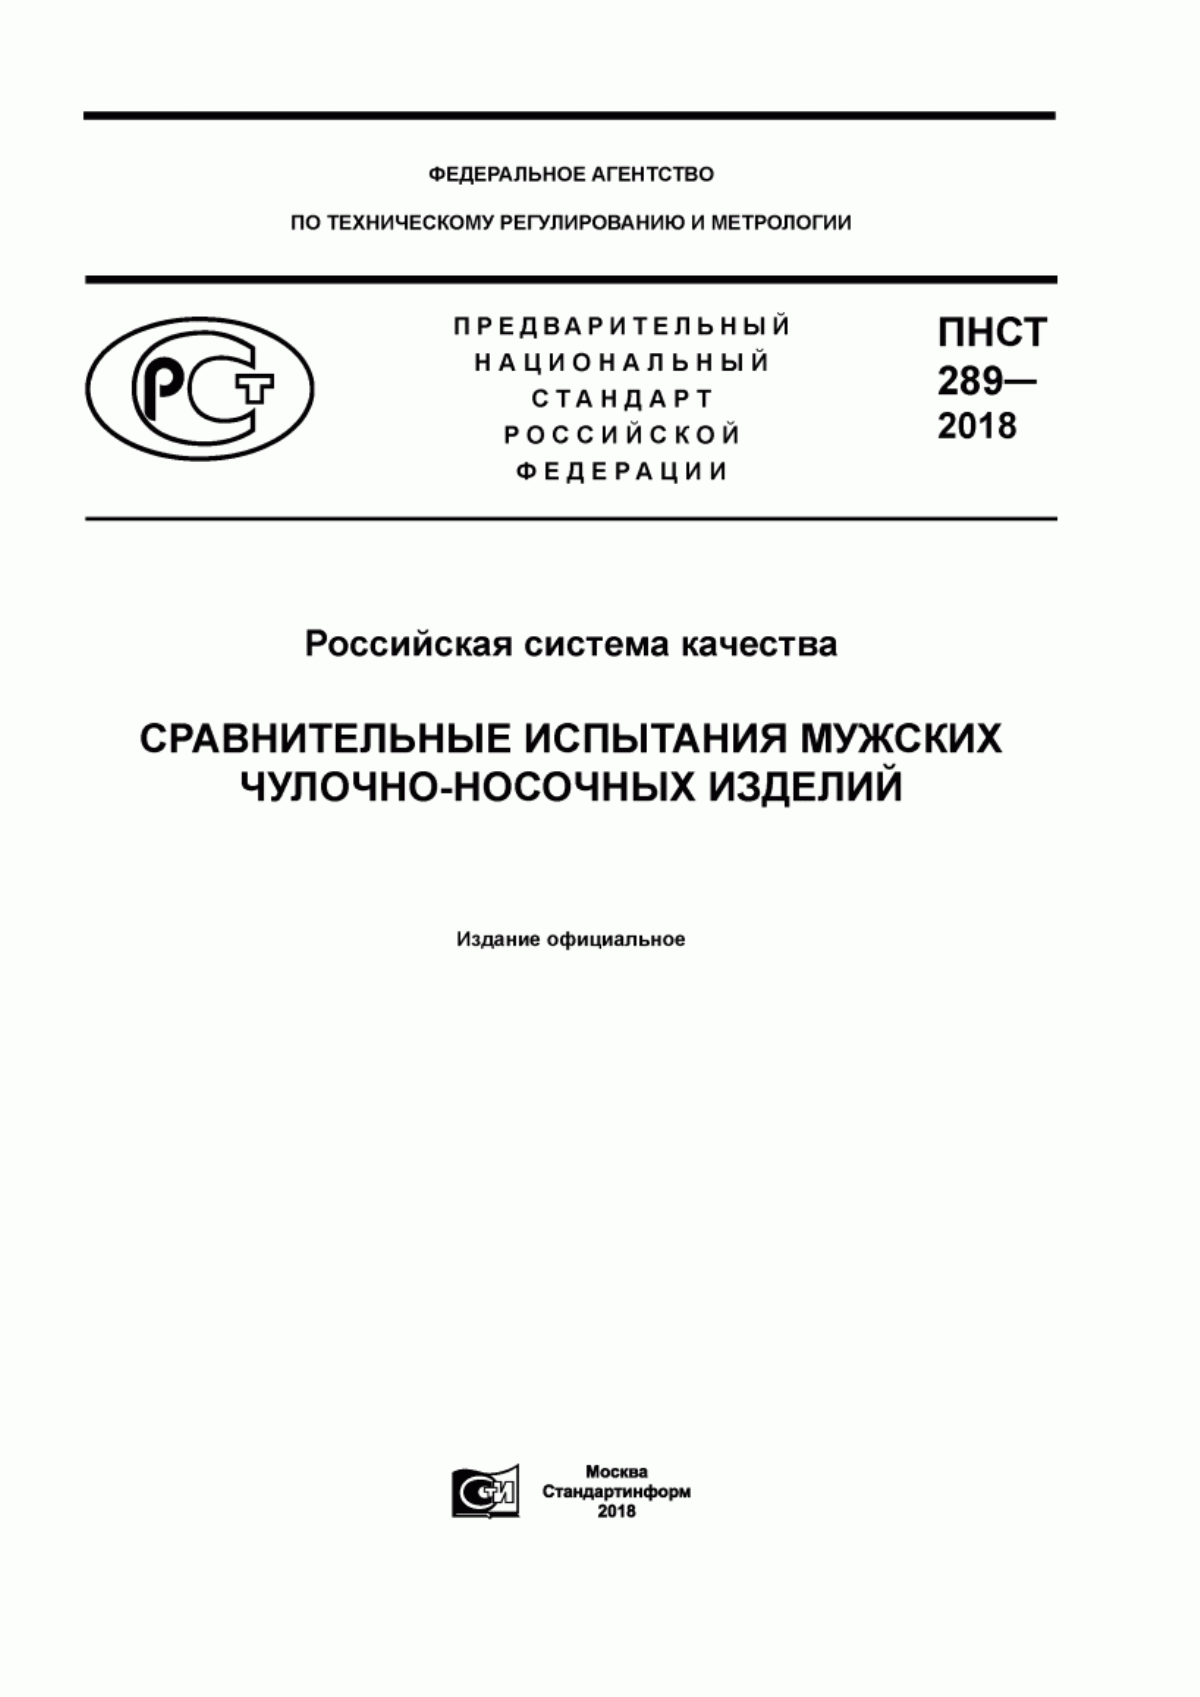 ПНСТ 289-2018 Российская система качества. Сравнительные испытания мужских чулочно-носочных изделий